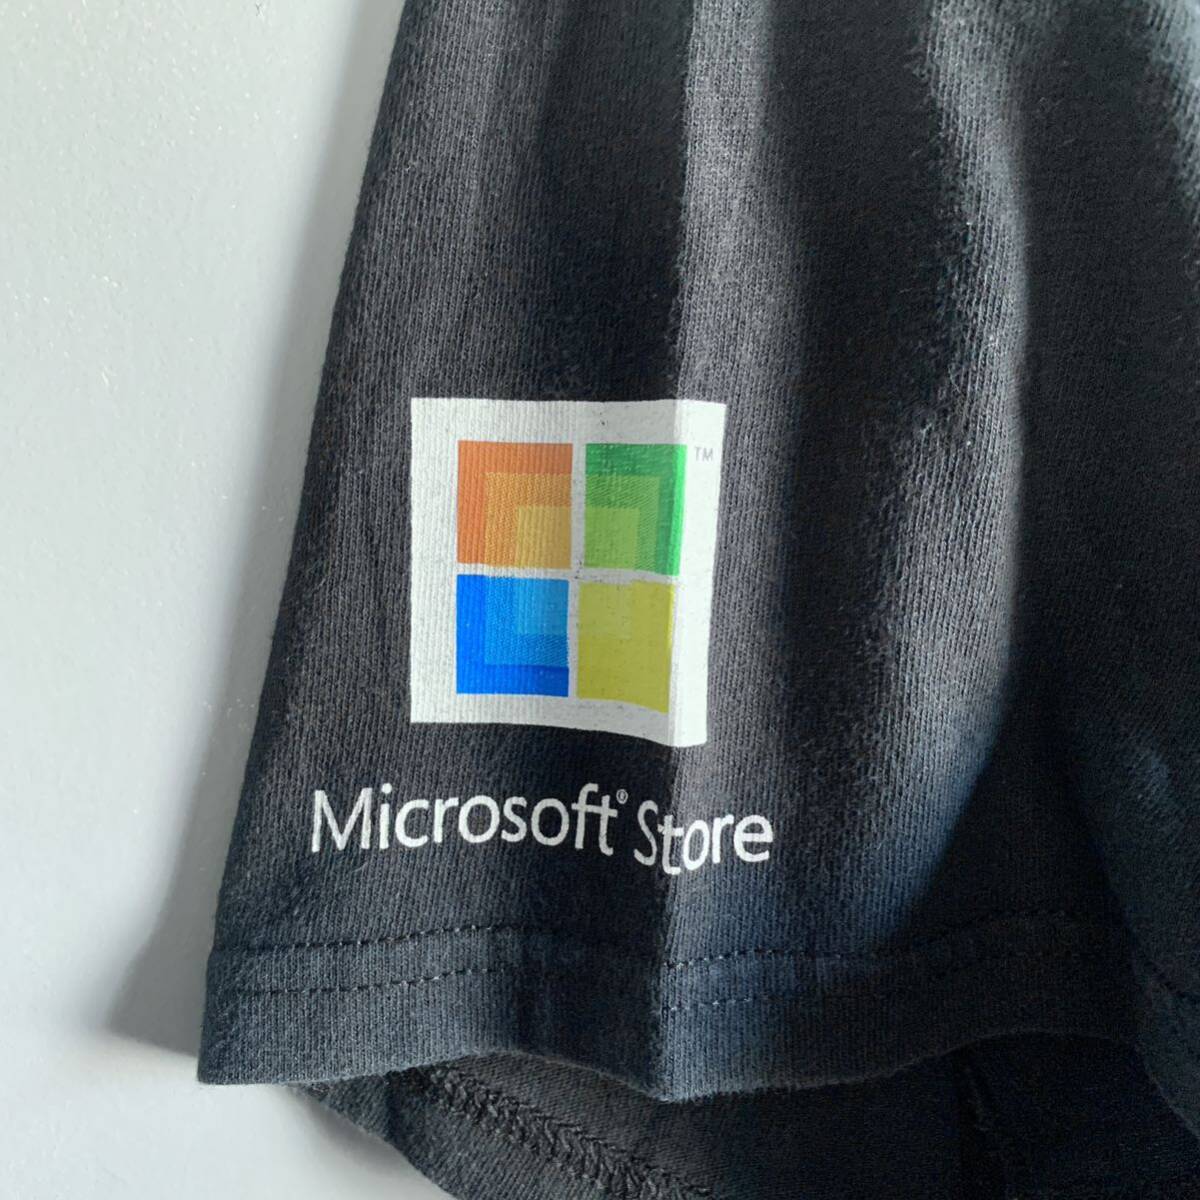 Microsoft I’M A PC 2008 企業Tシャツ マイクロソフト ブラック M Gildan ボディー ヴィンテージ プロモーション